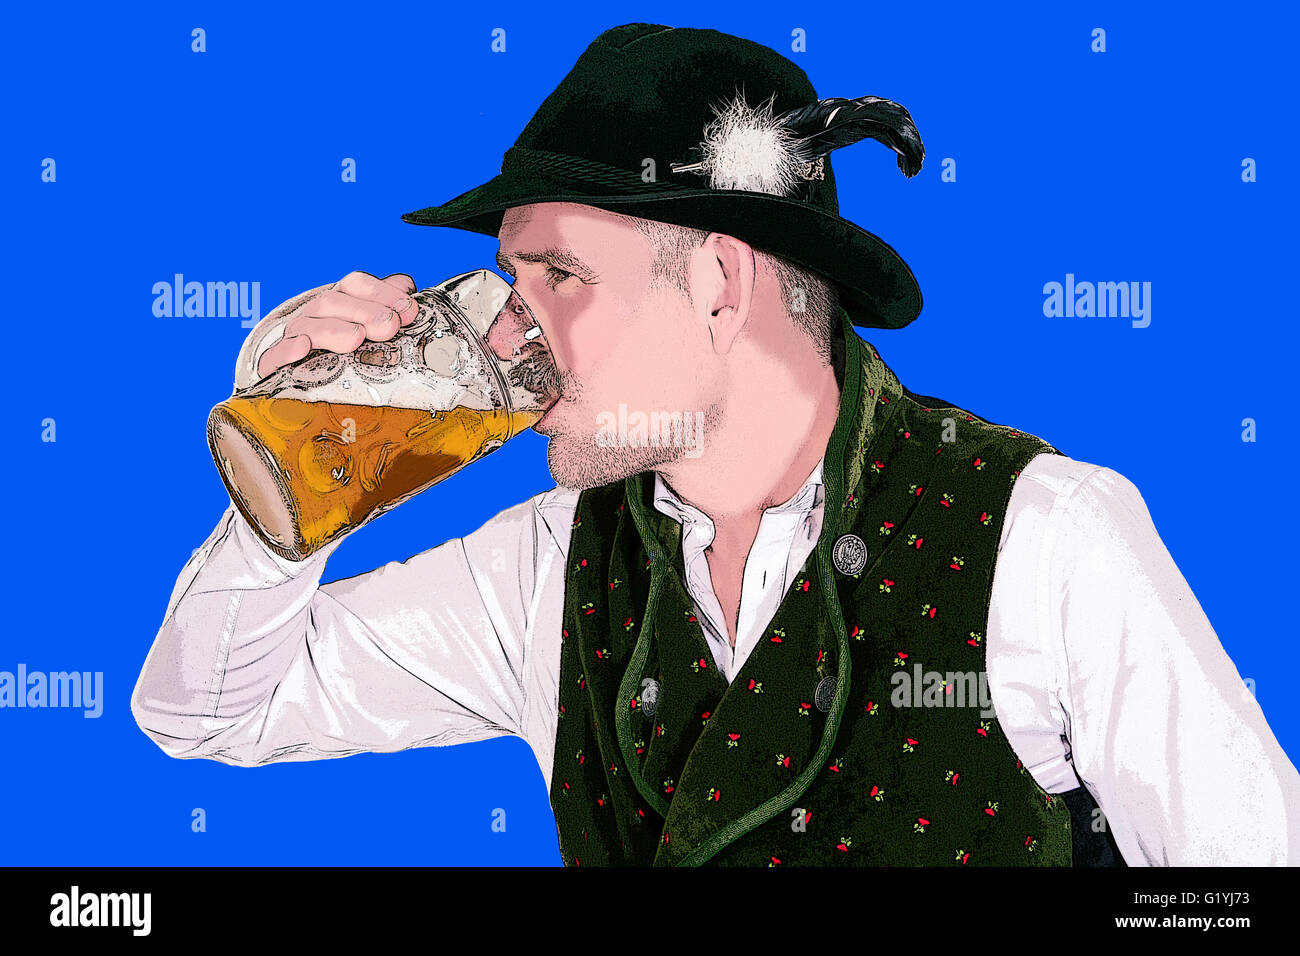 Illustration de l'homme en habits traditionnels bavarois, boire de la bière Banque D'Images